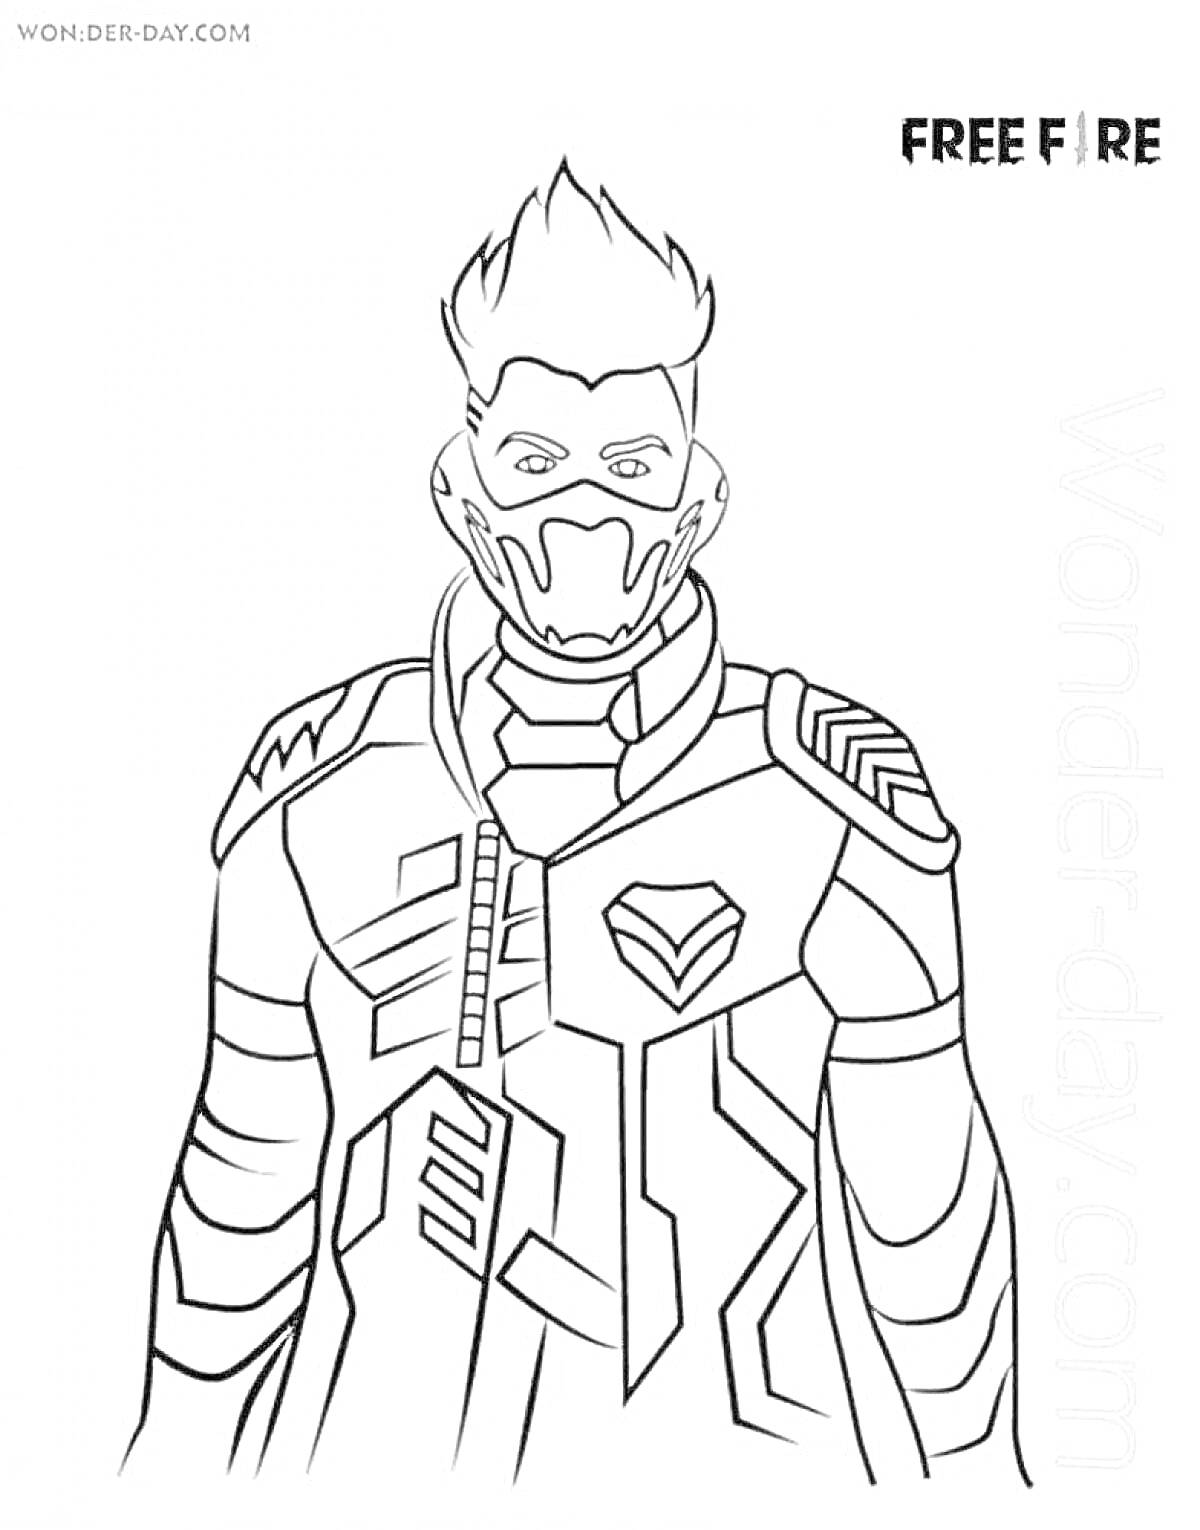 Персонаж в маске с короткими волосами и боевым костюмом из игры Free Fire